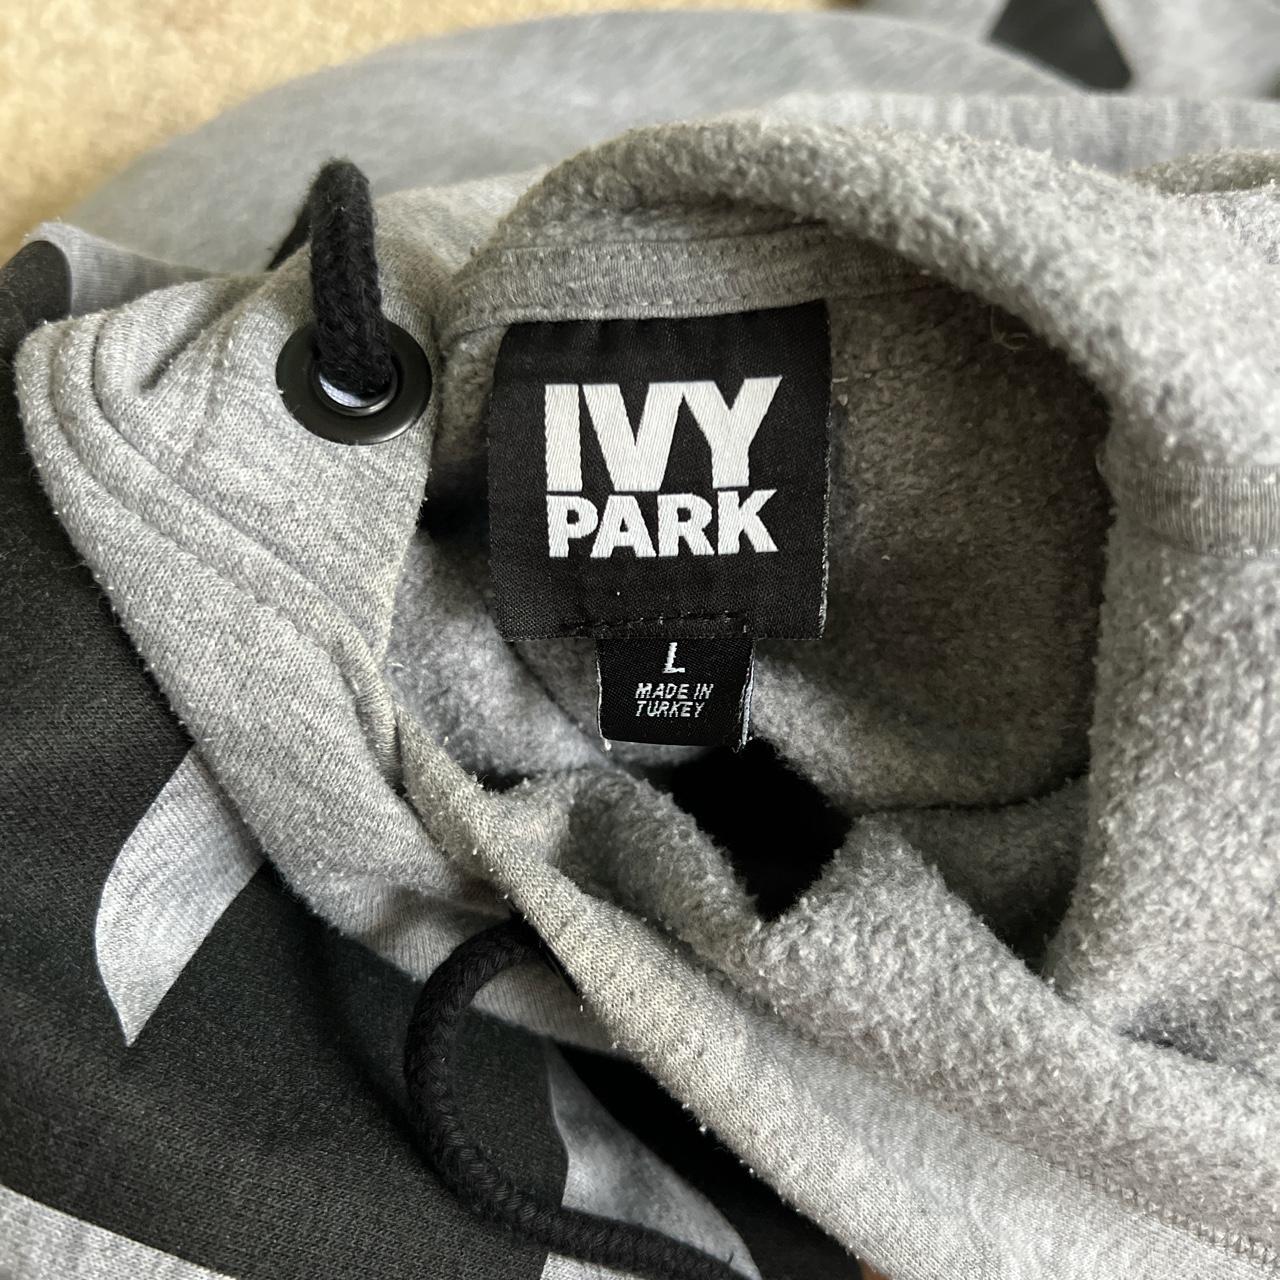 Ivy Park Women's Hoodie | Depop